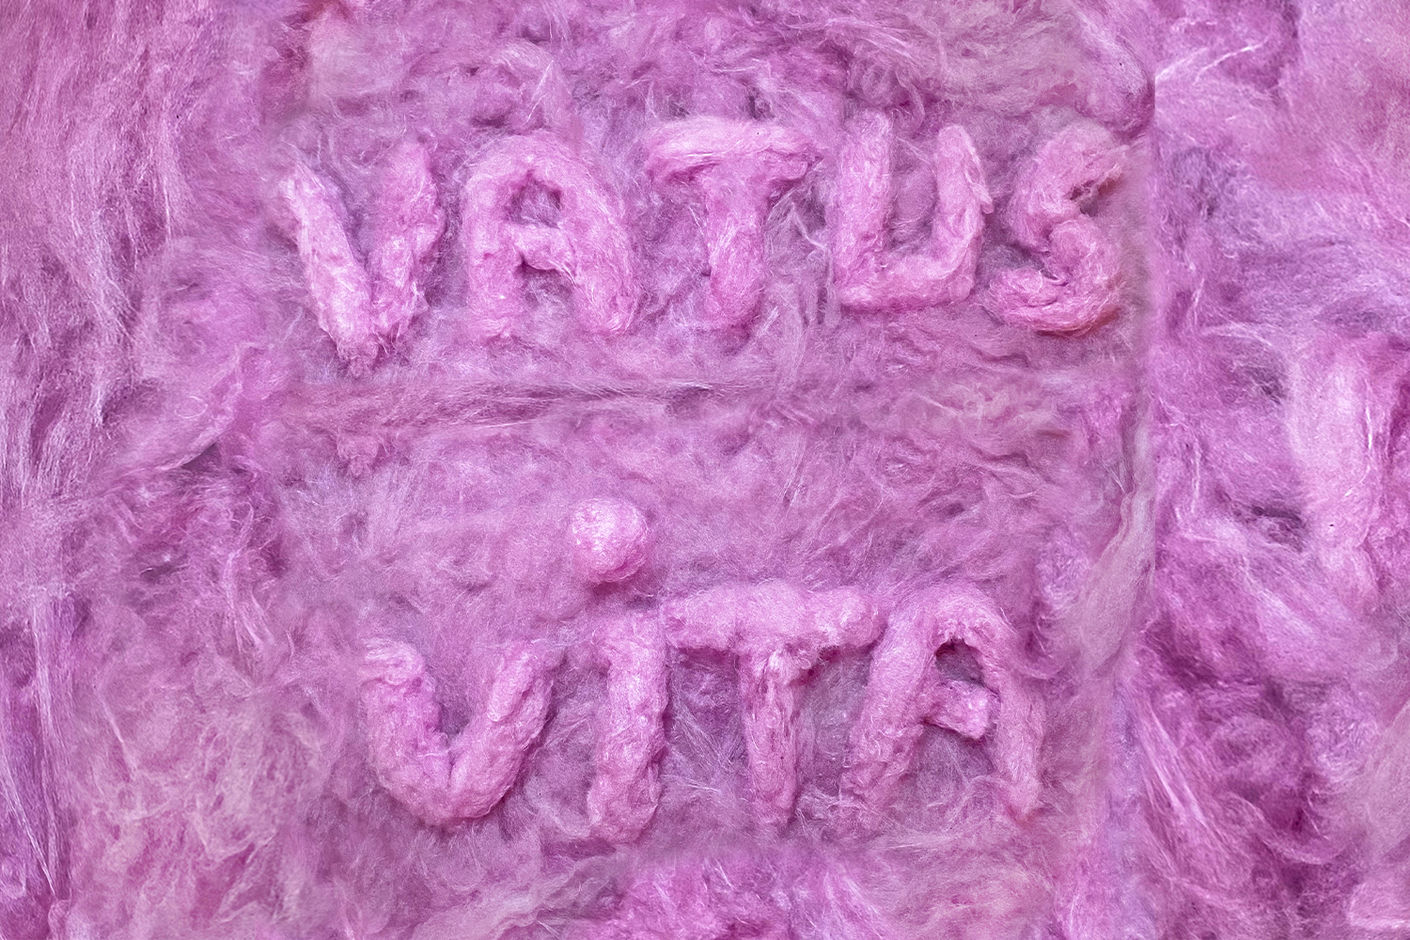 VATUS VITA. Интерактивная инсталляция студентки профиля «Современное искусство»